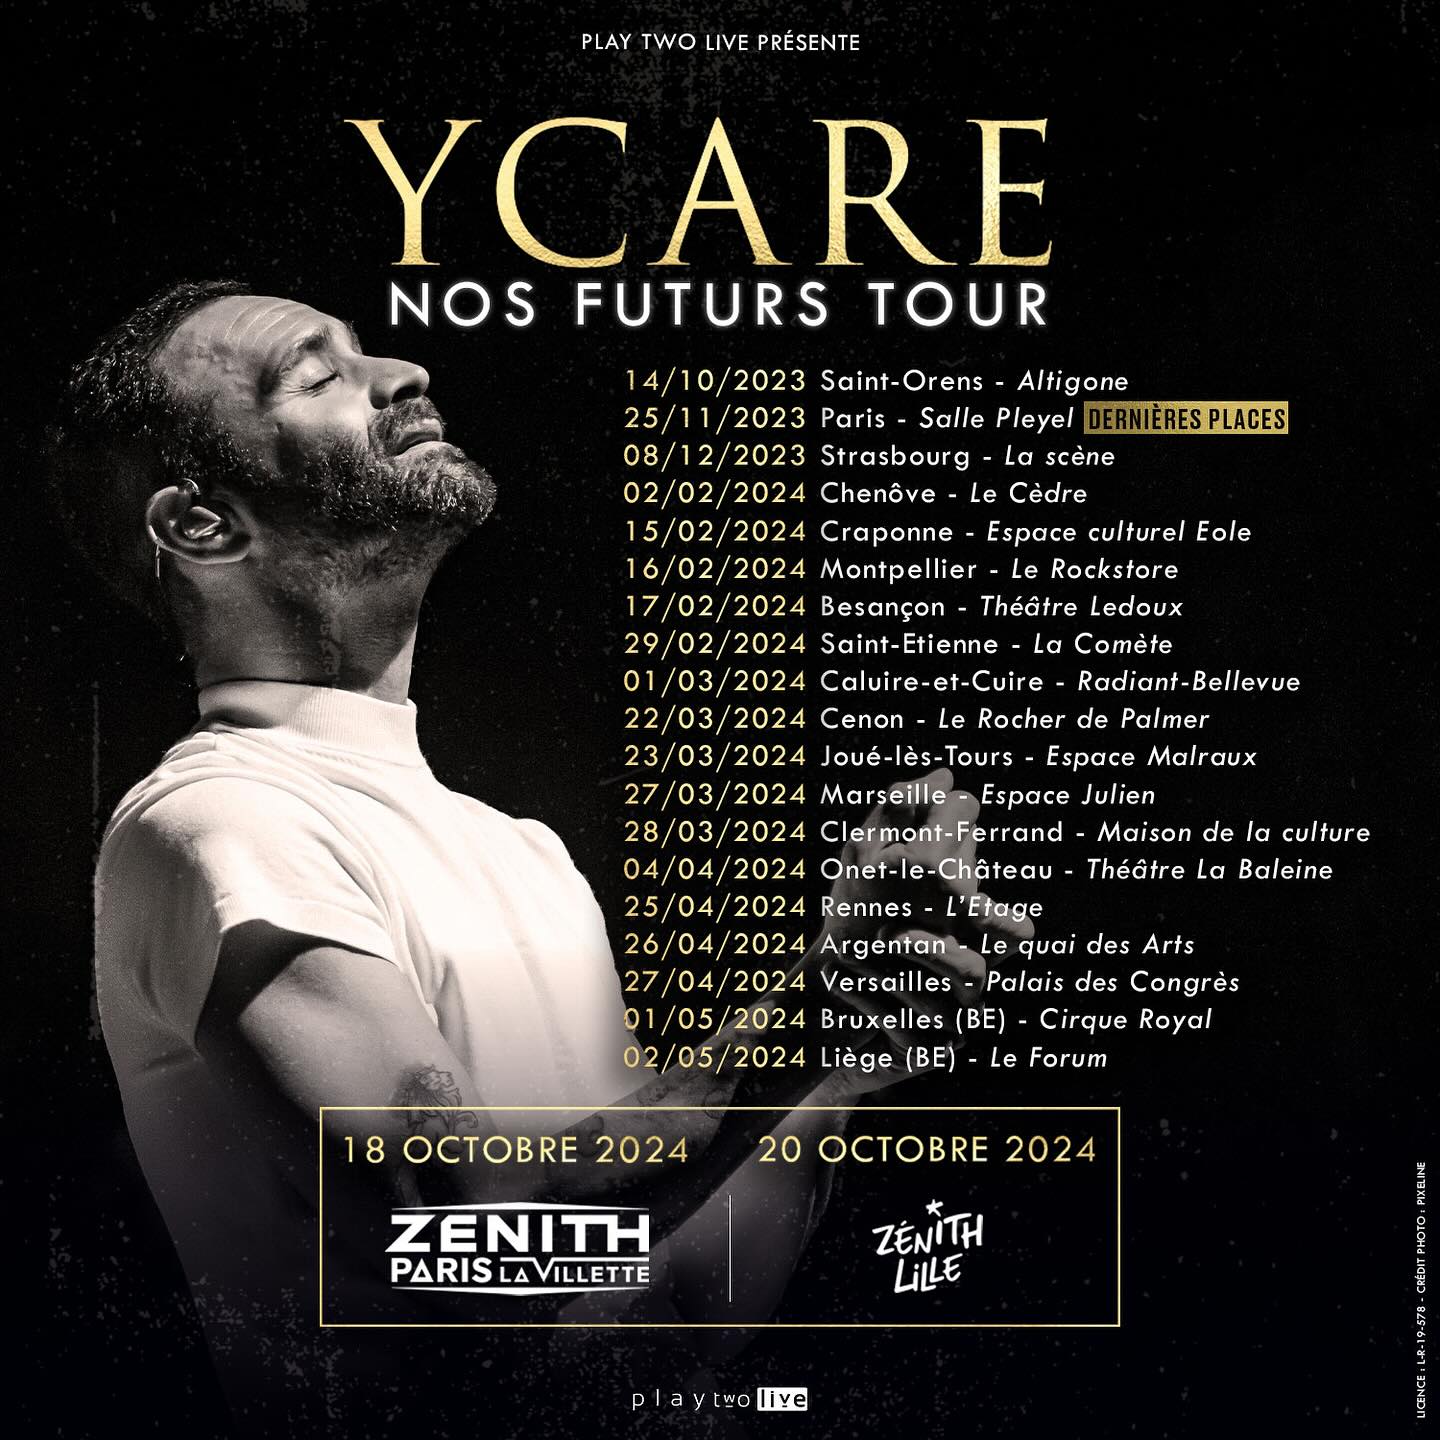 Ycare - Nos Futurs Tour in der Zenith Lille Tickets